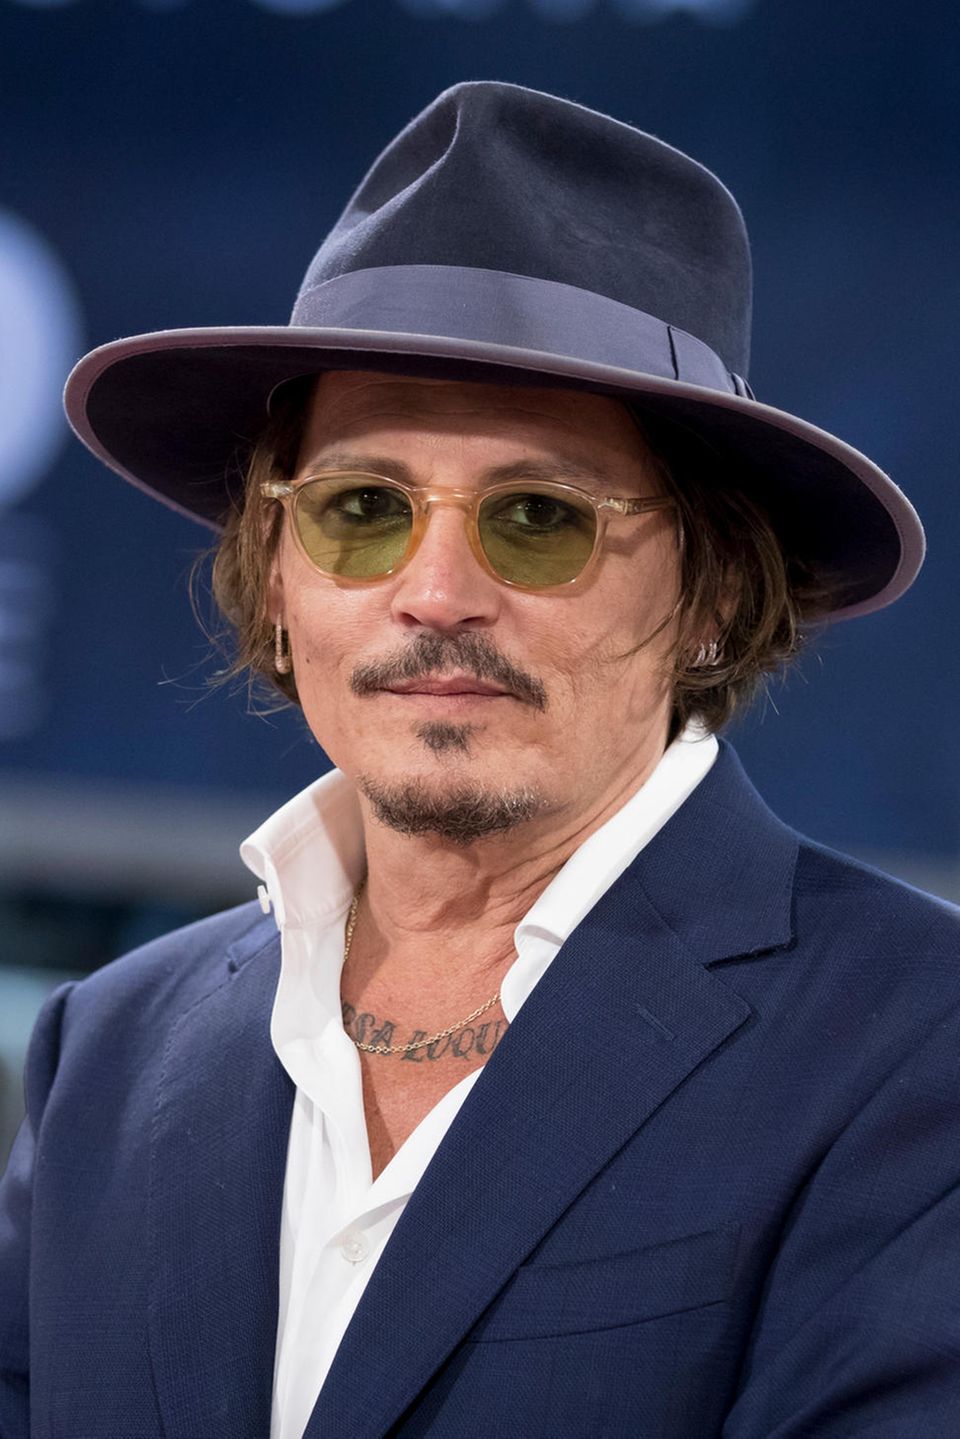 2020  Johnny Depp interpretiert den Hut-Look auch elegant: So trägt er ein dunkelblaues Exemplar mit farblich passendem Anzug und weißem Hemd zur Premiere seines neuen Films.